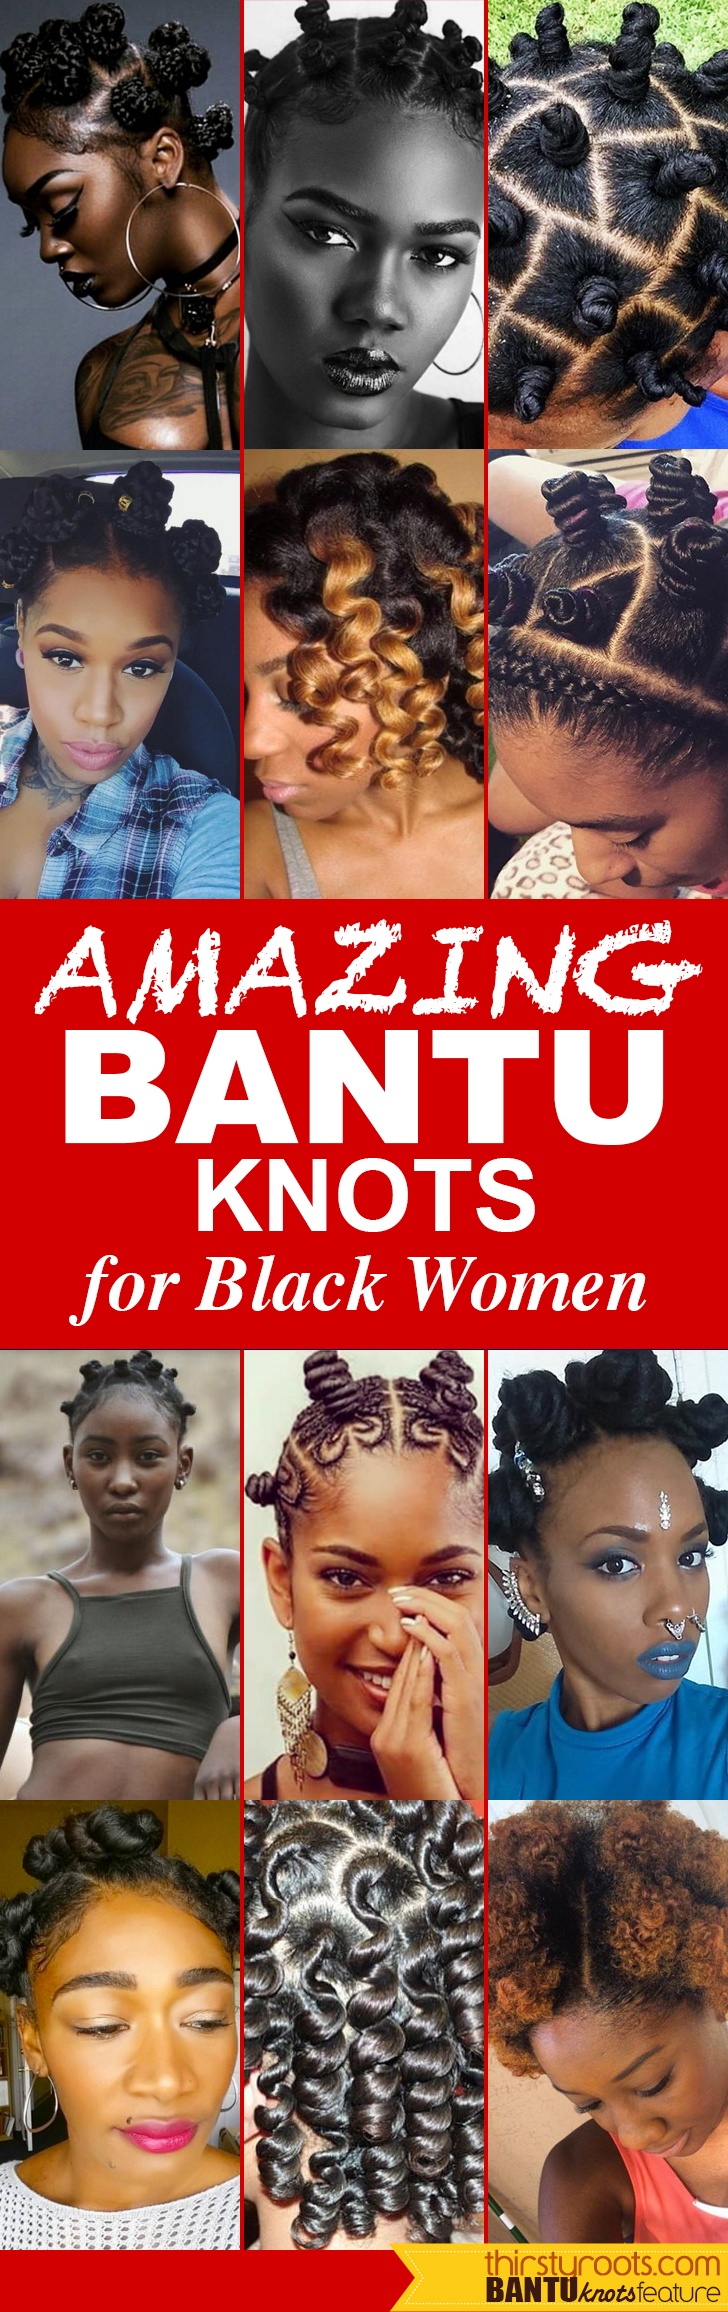 bantu knots tutorial plus 25 hot pictures